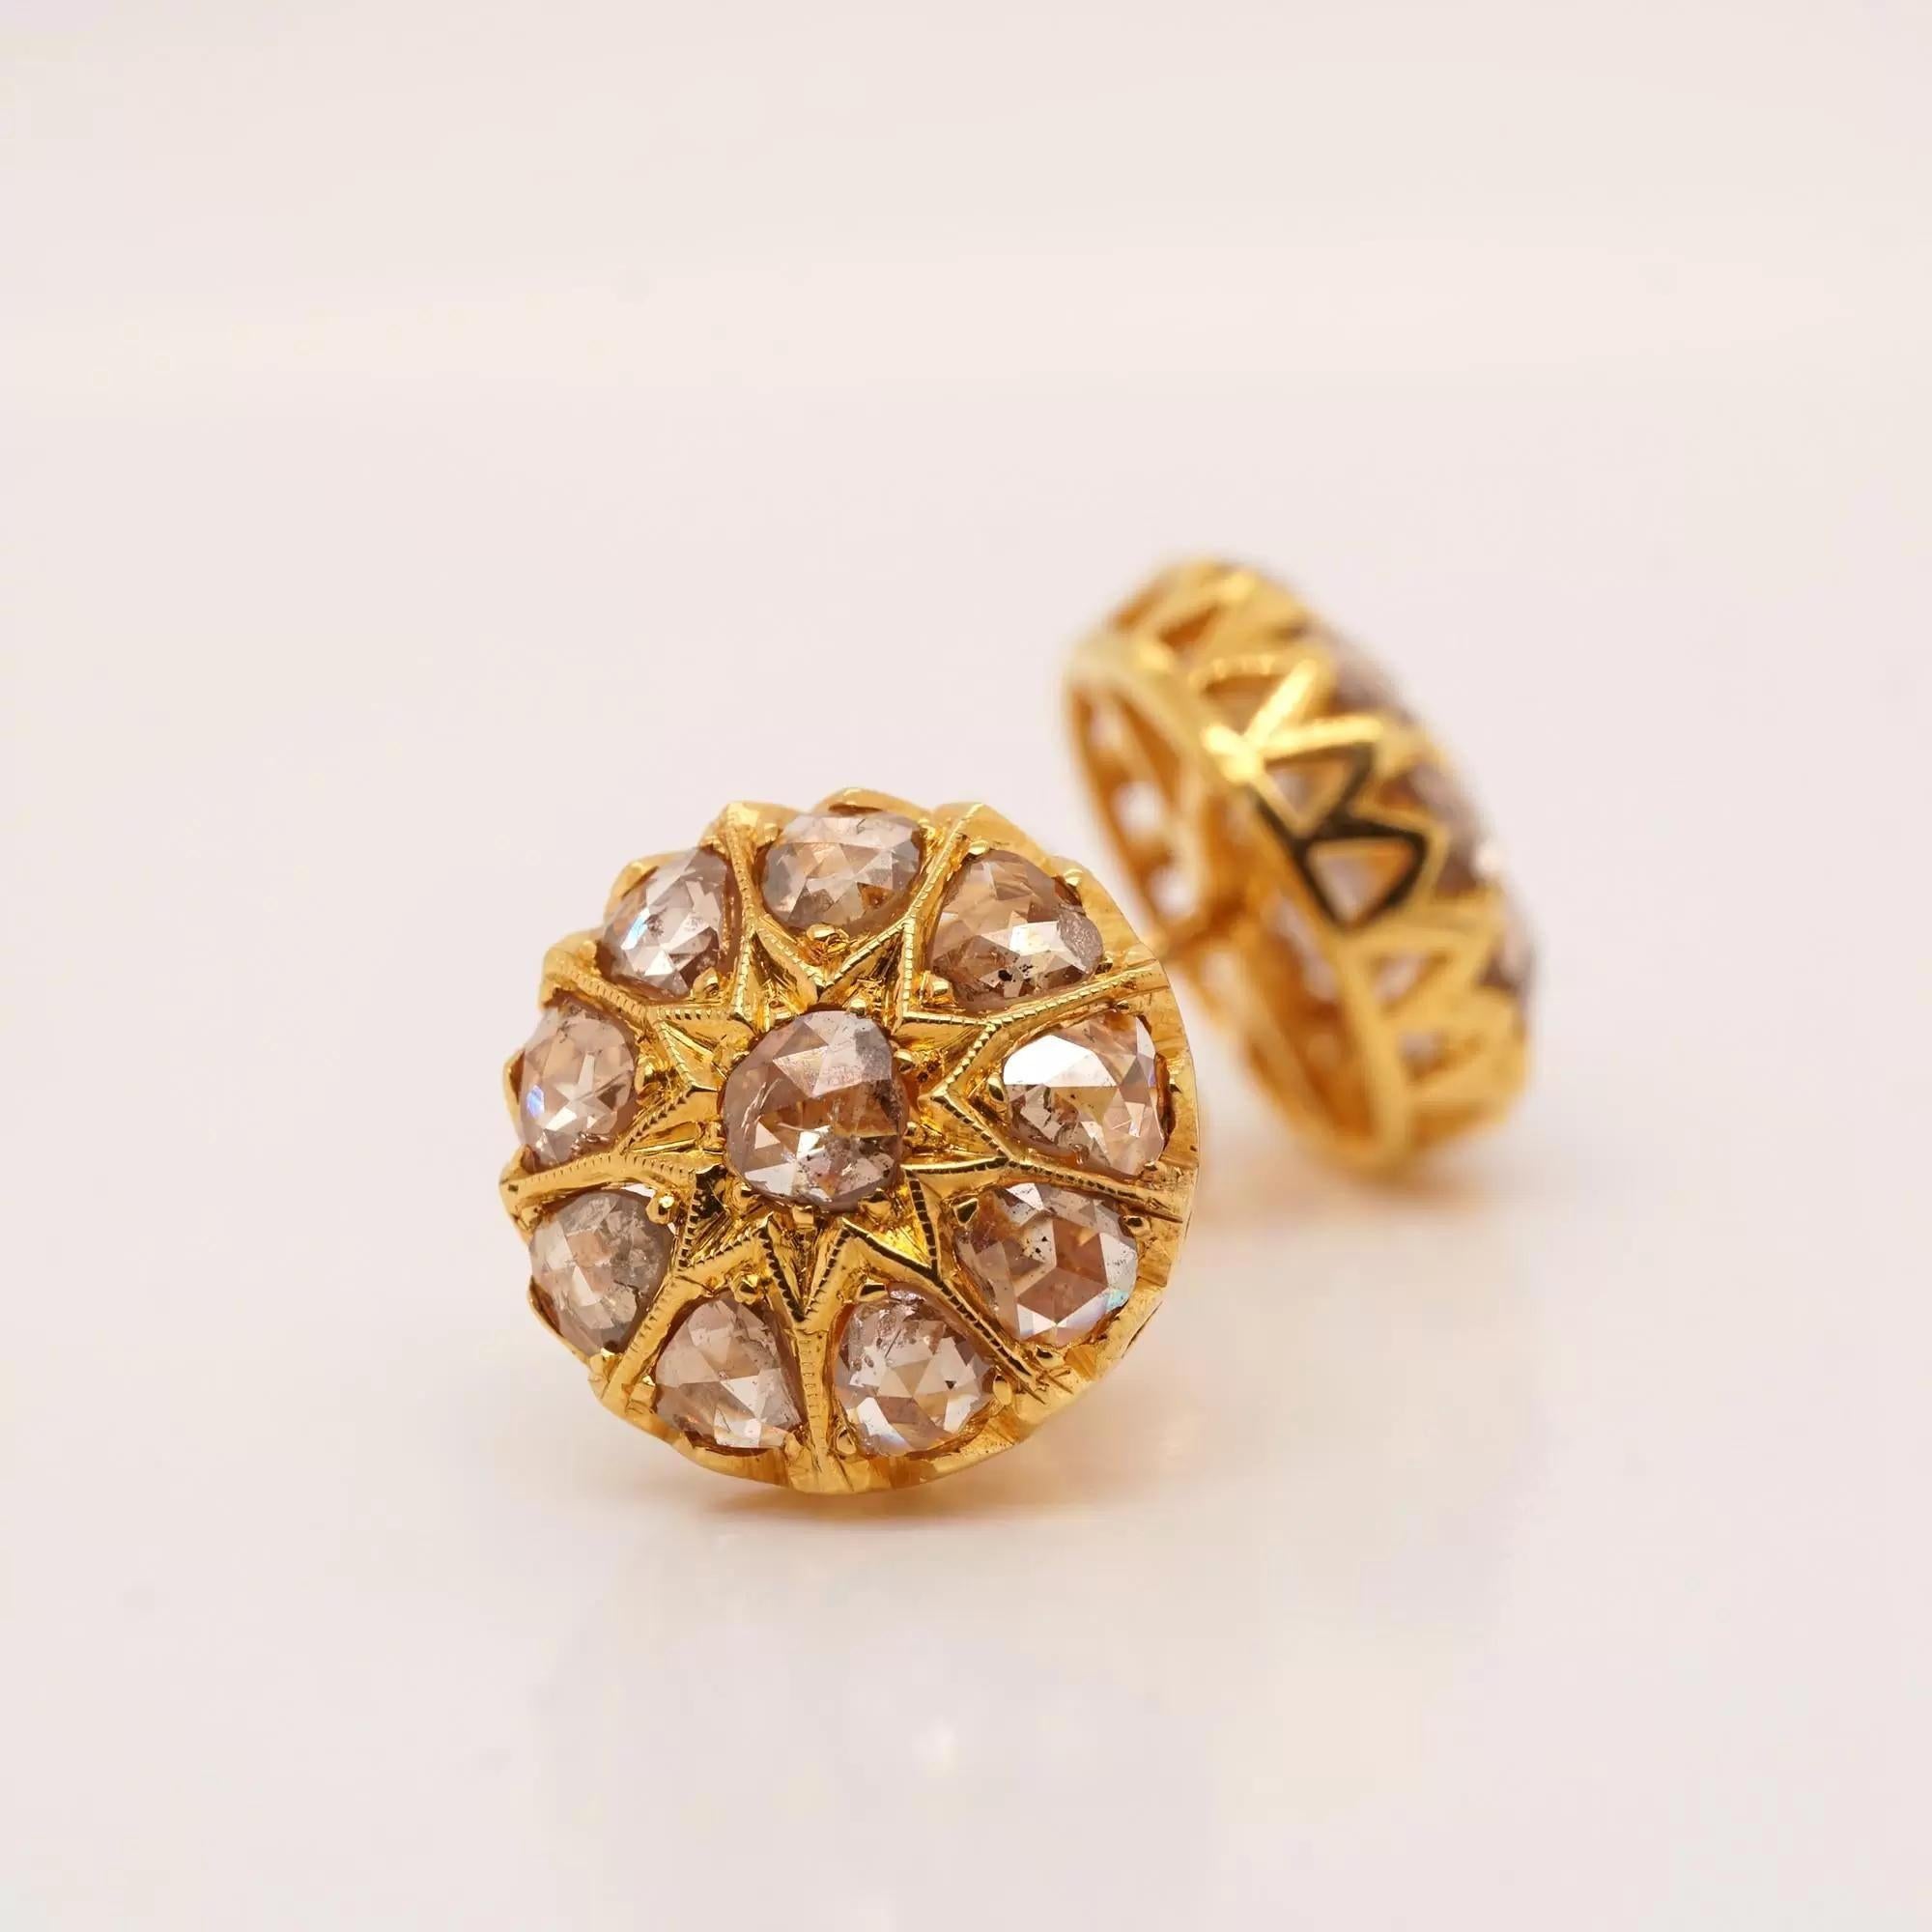 Die Flower Style Rose Cut 9ky Gold Earrings werden mit runden Diamanten im Rosenschliff hergestellt, die auf einer Seite sehr flache Facetten haben, um sie in Vintage-Schmuckstücken zu verwenden, im Gegensatz zur industriellen Verwendung. Dieser